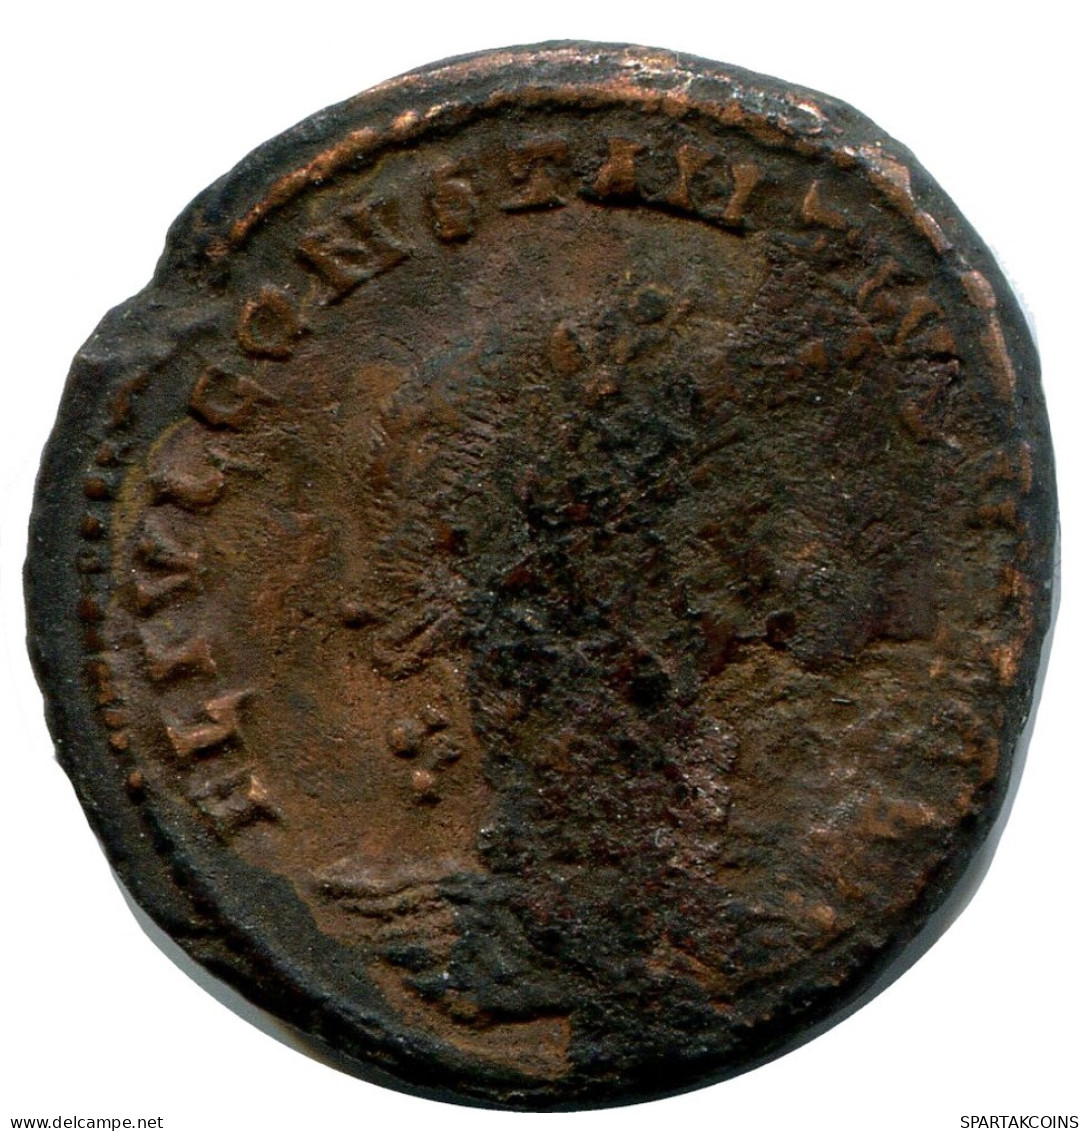 CONSTANTIUS II MINTED IN ALEKSANDRIA FOUND IN IHNASYAH HOARD #ANC10199.14.U.A - Der Christlischen Kaiser (307 / 363)